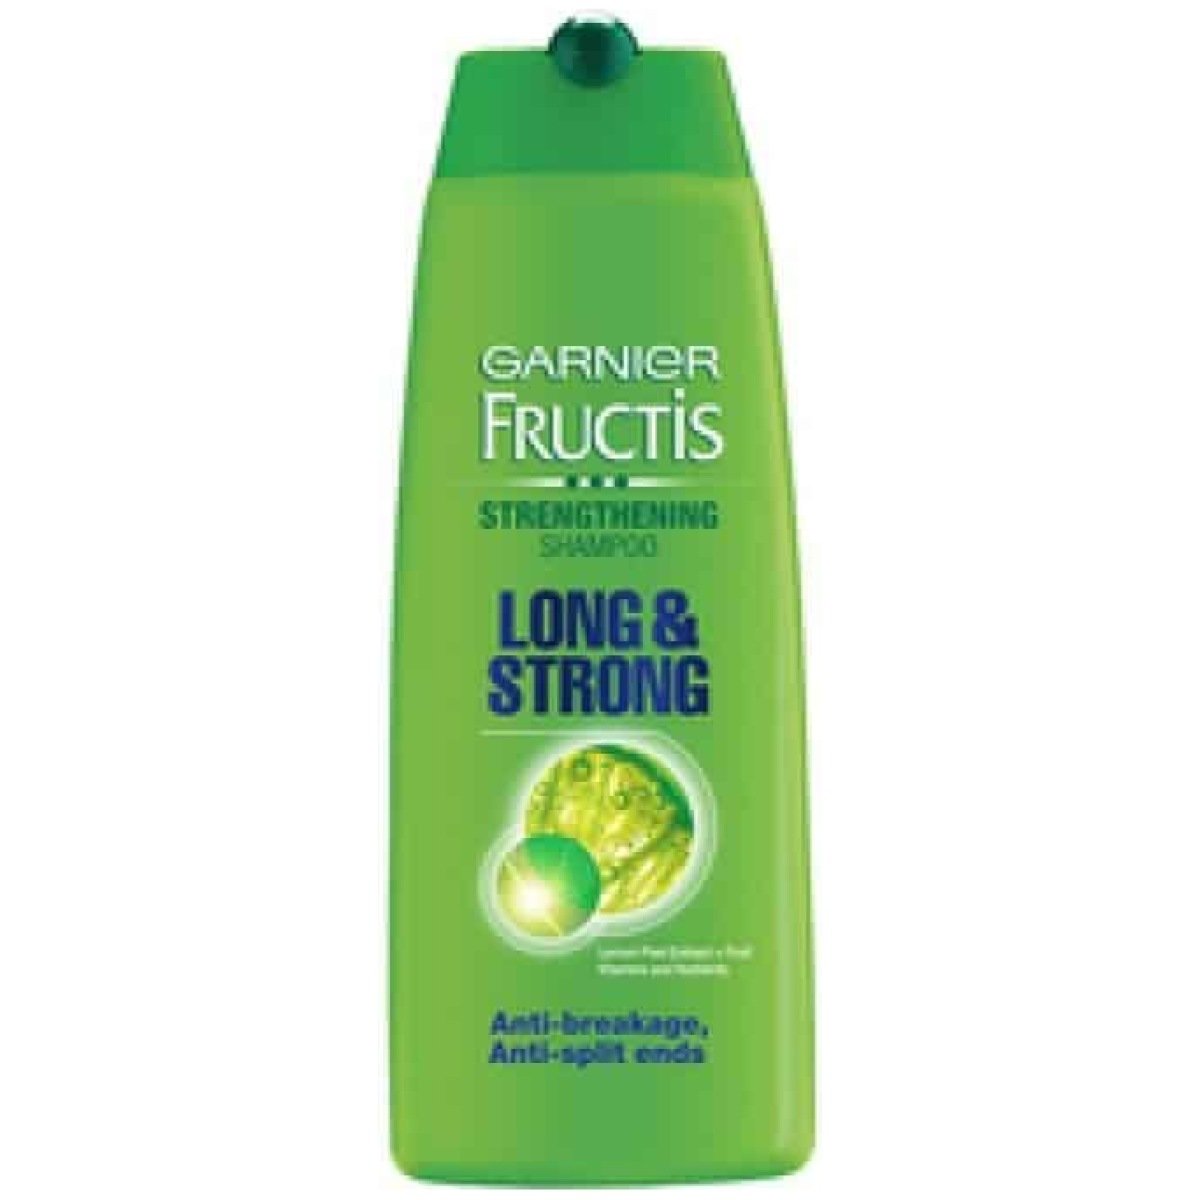 Garnier Fructis Strengthening Long & Strong Shampoo 175ml